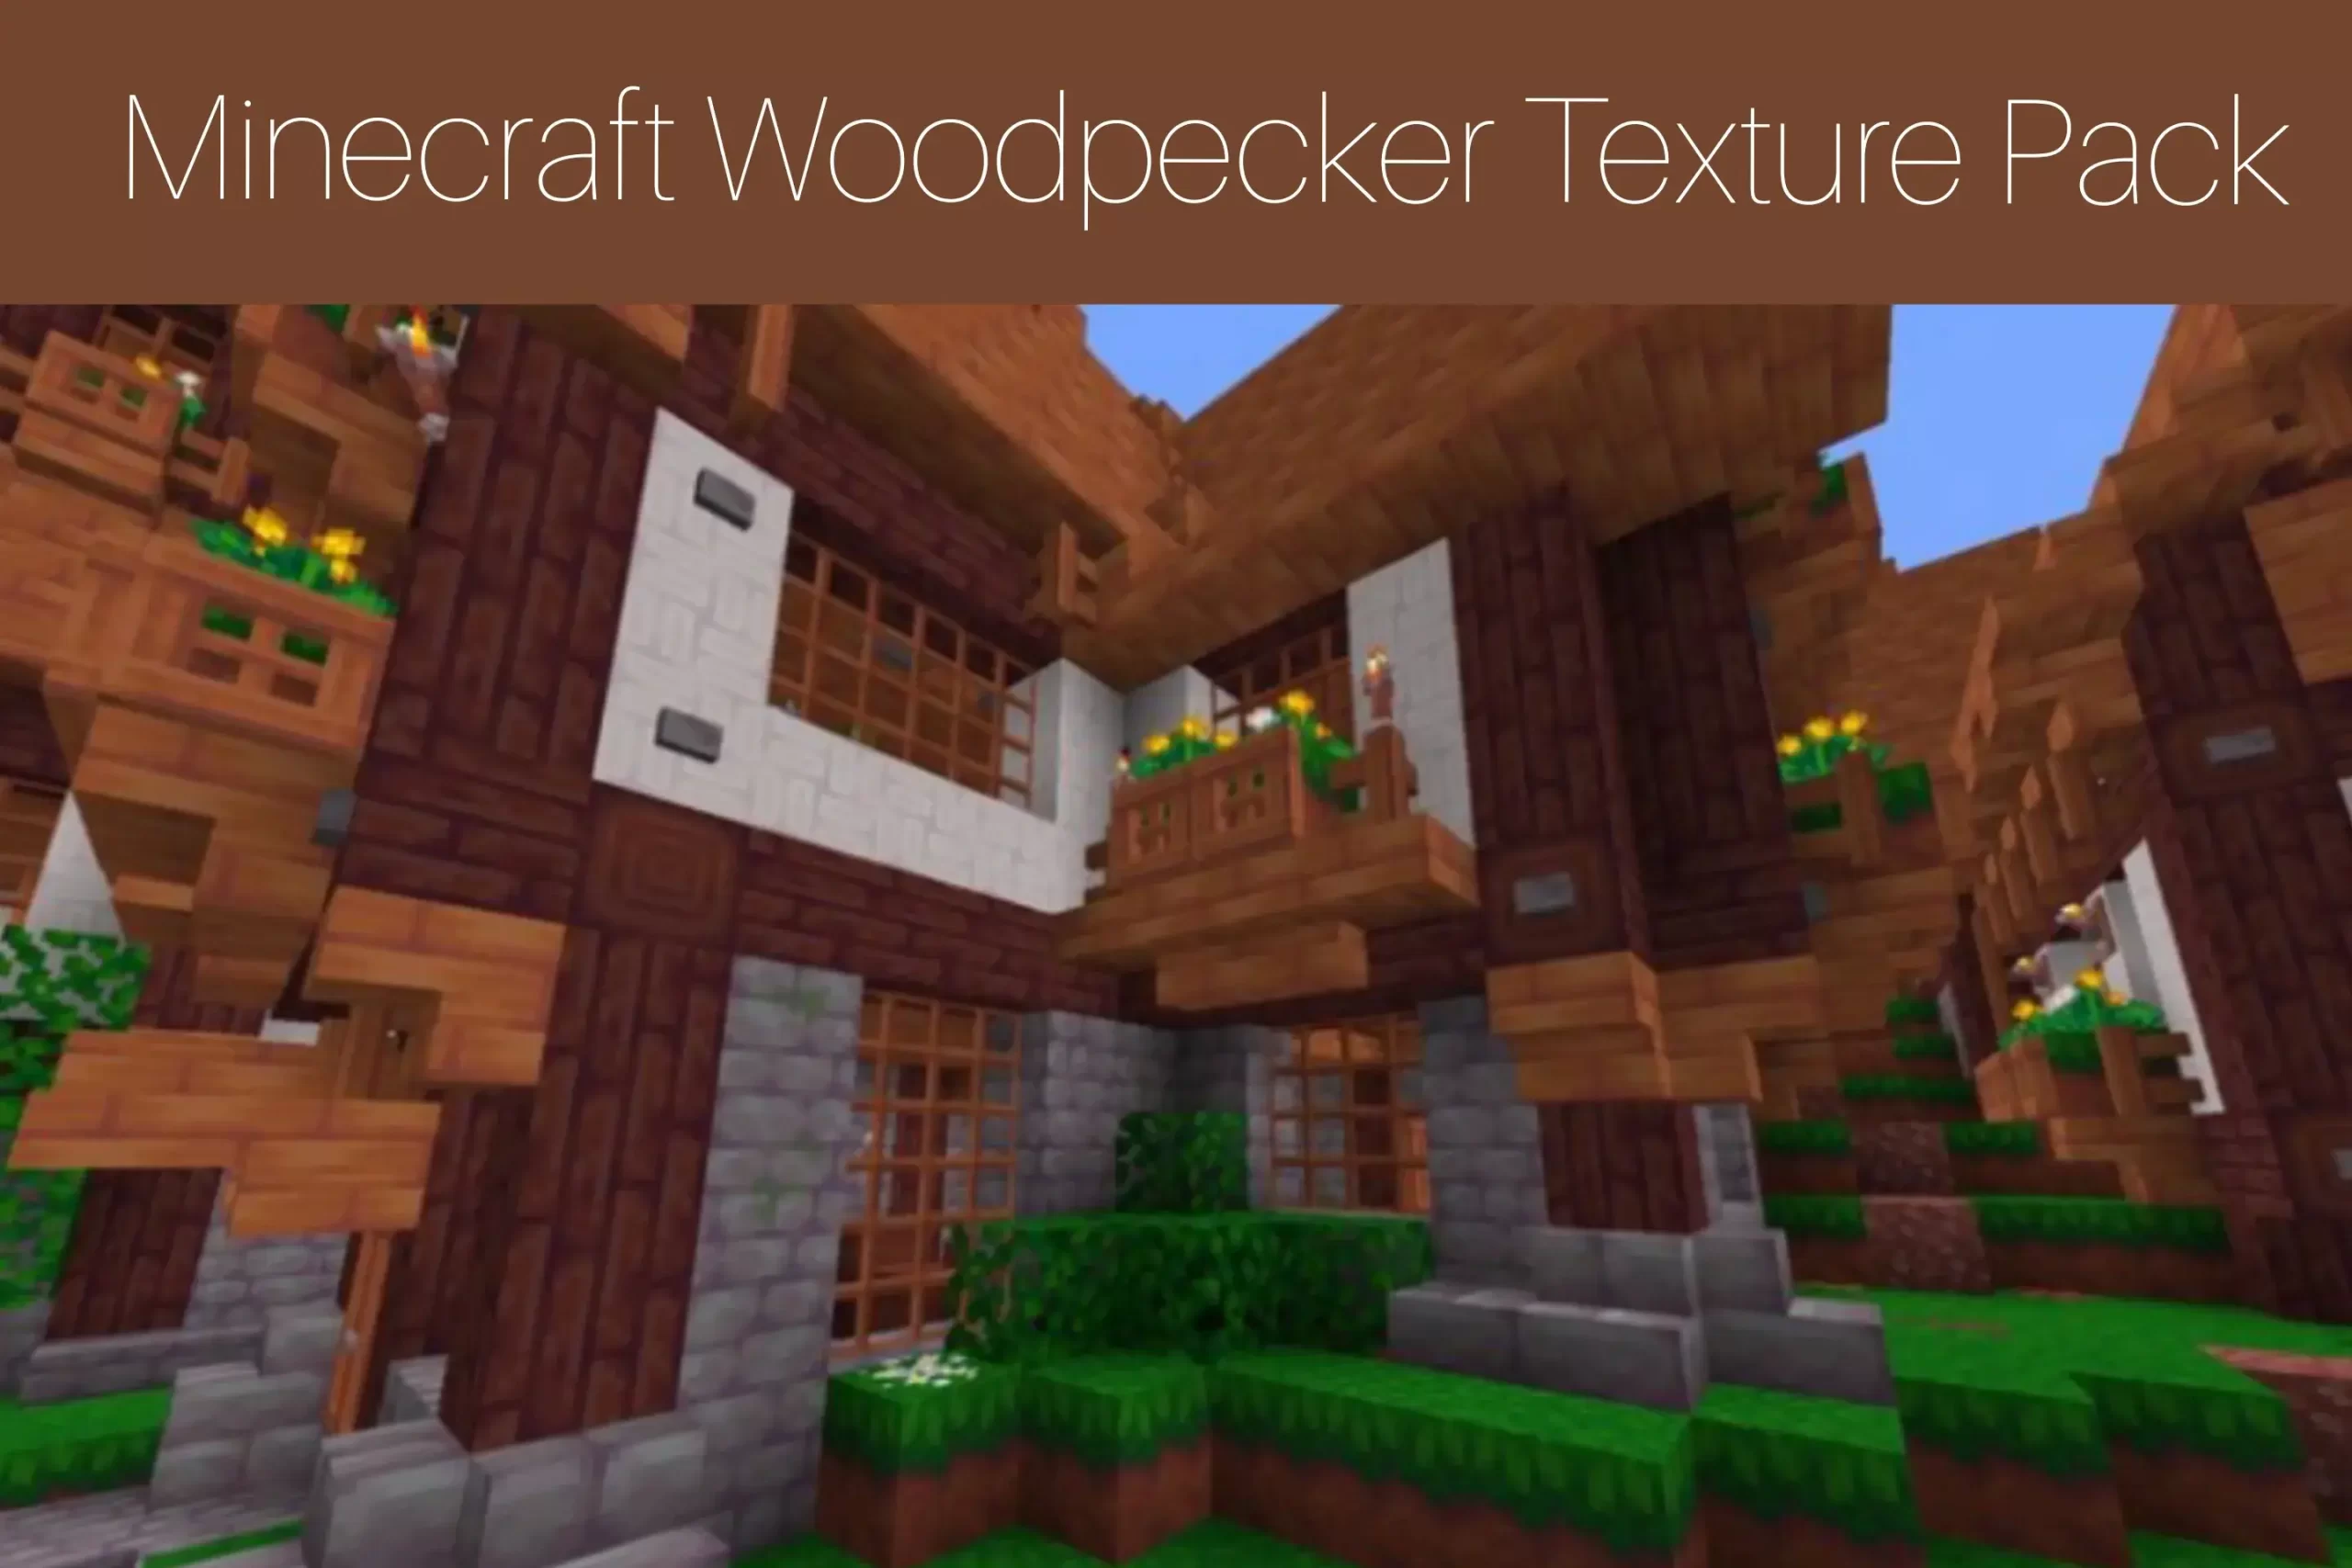 Minecraft Woodpecker Texture Pack